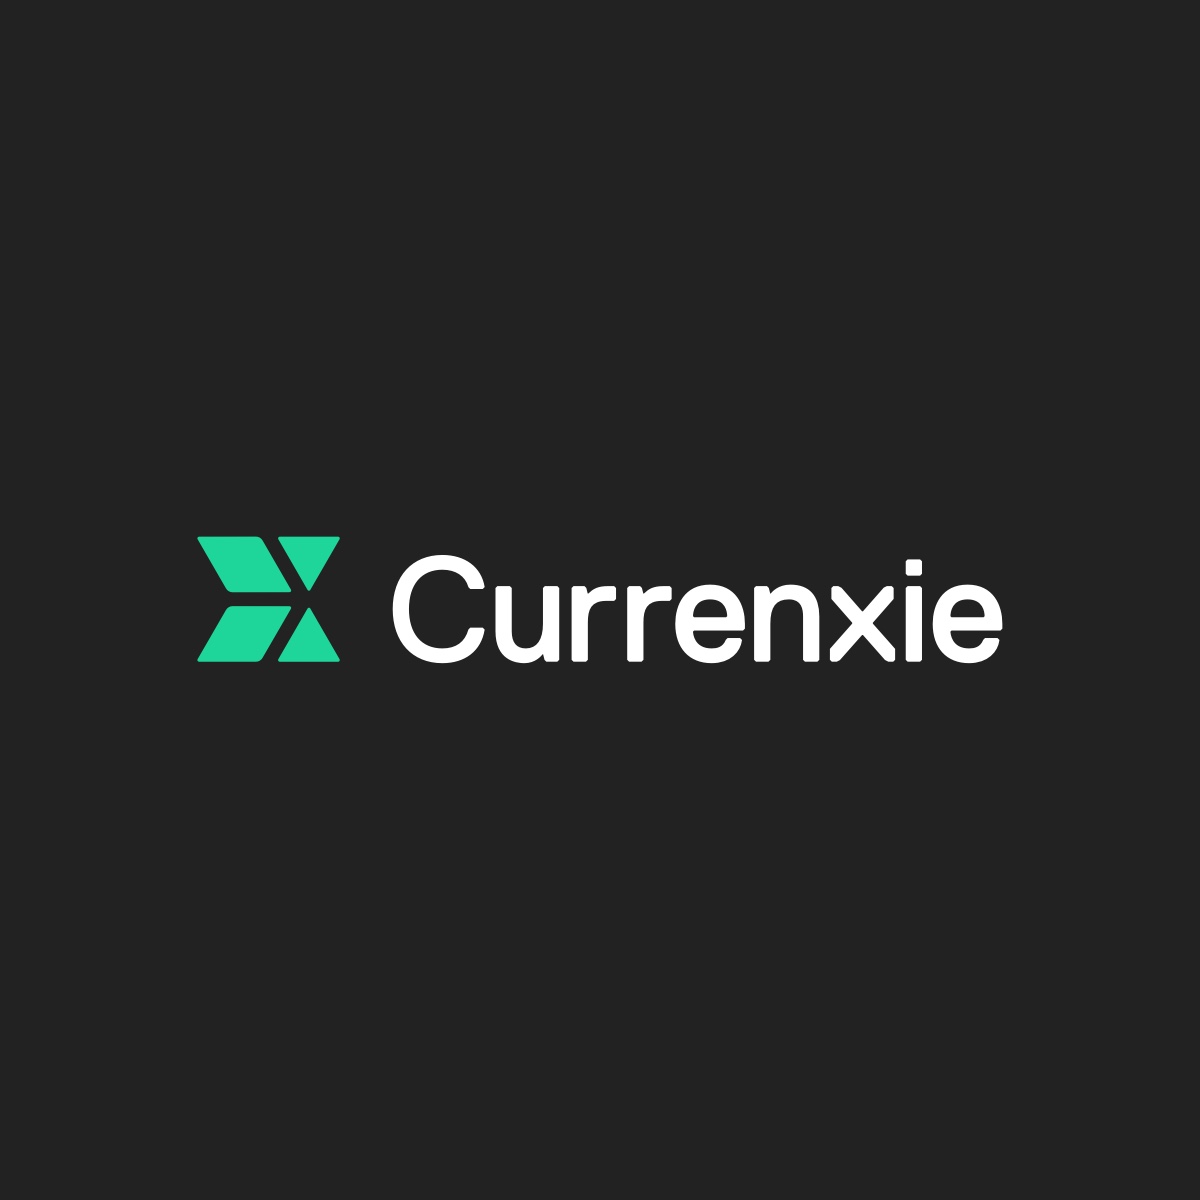 www.currenxie.com